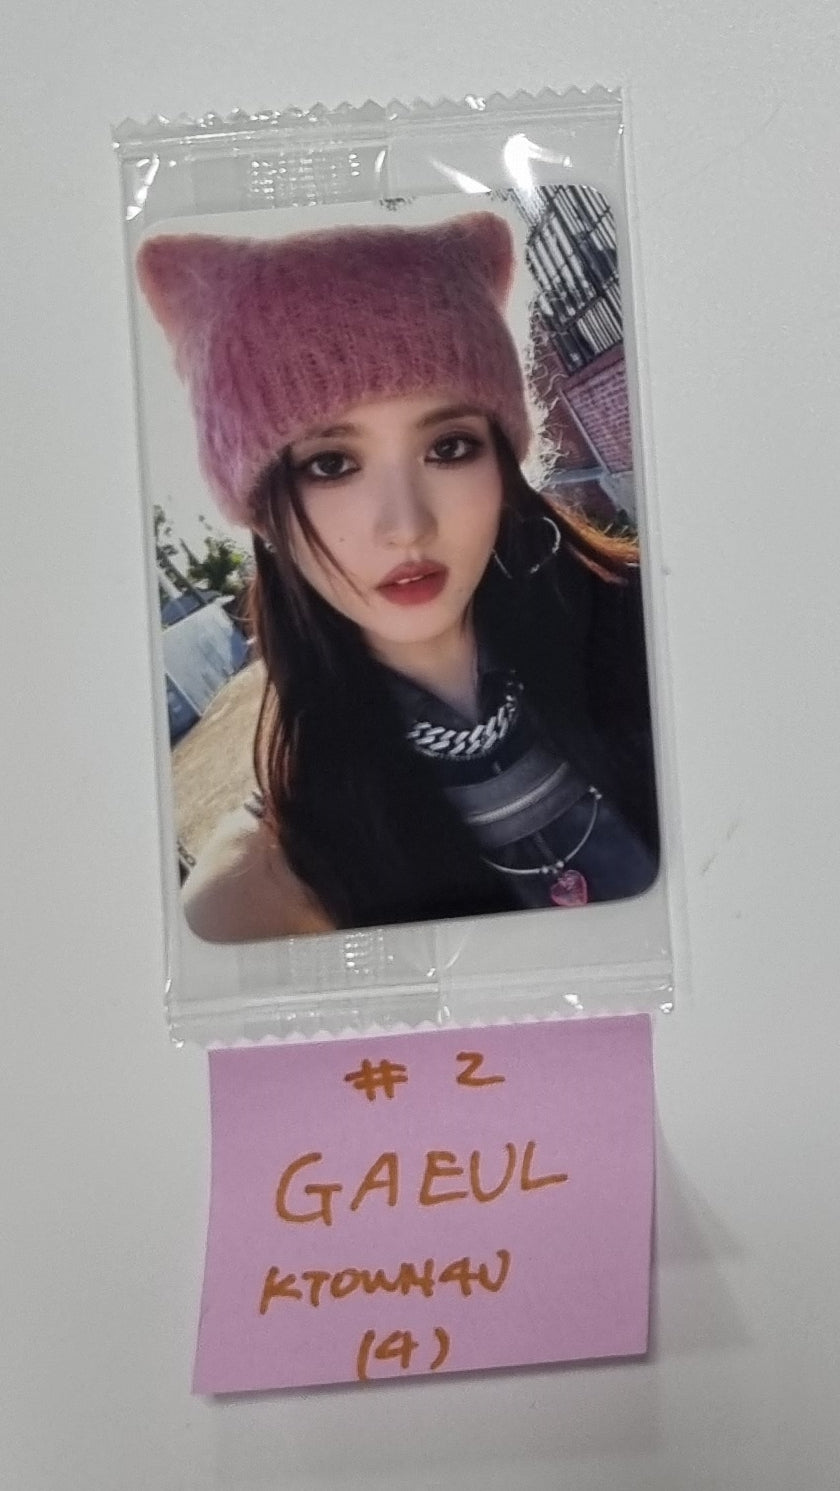 IVE "I'VE MINE" 1st EP - Ktown4U Fansign Event Photocard [23.10.19]